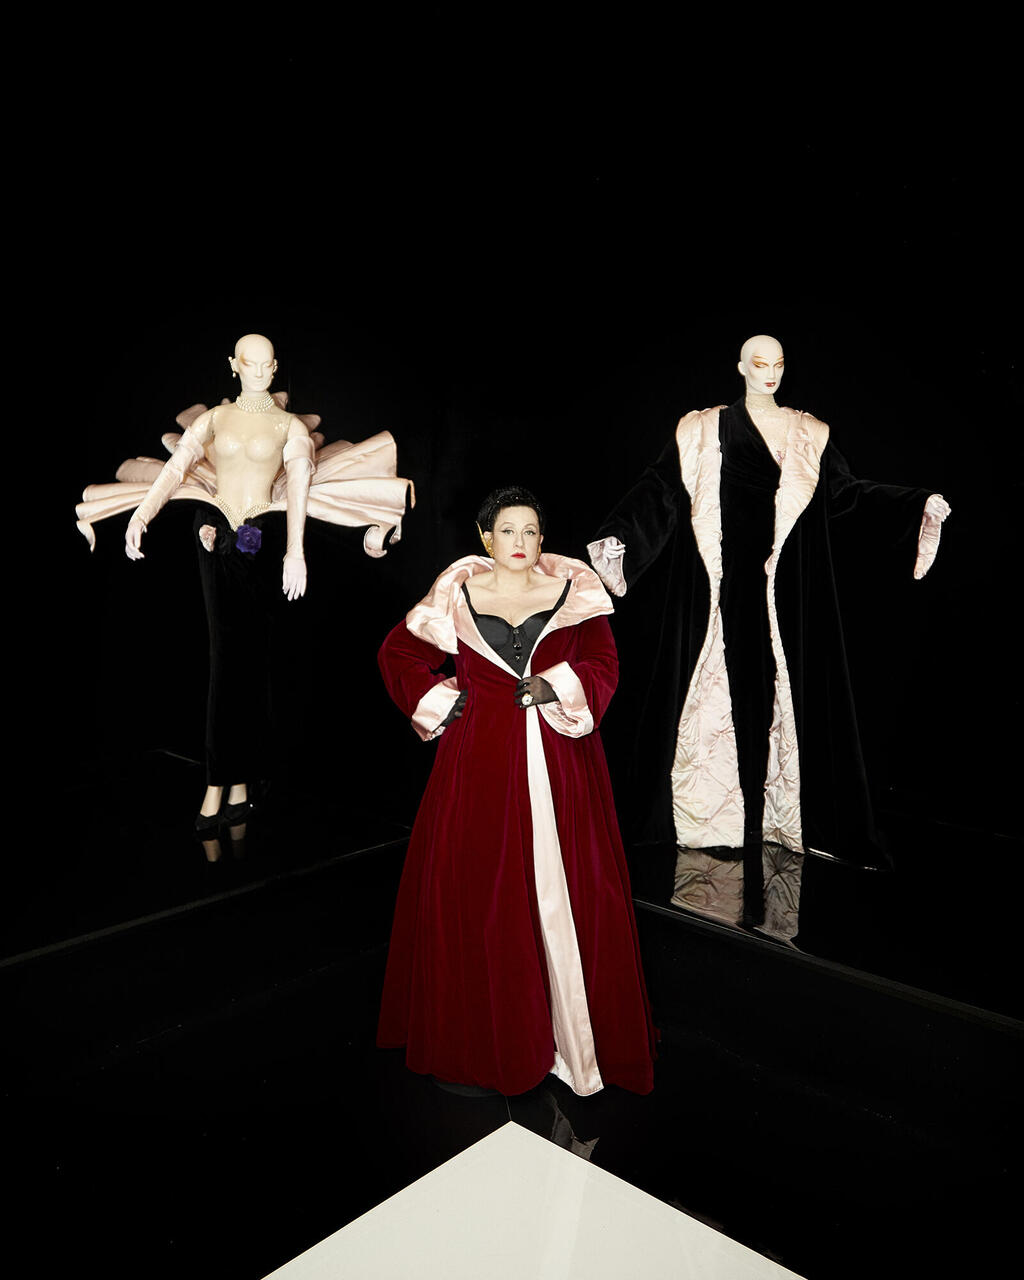 סטלה אליס עמר בתערוכה של מוגלר במוזיאון ברוקלין